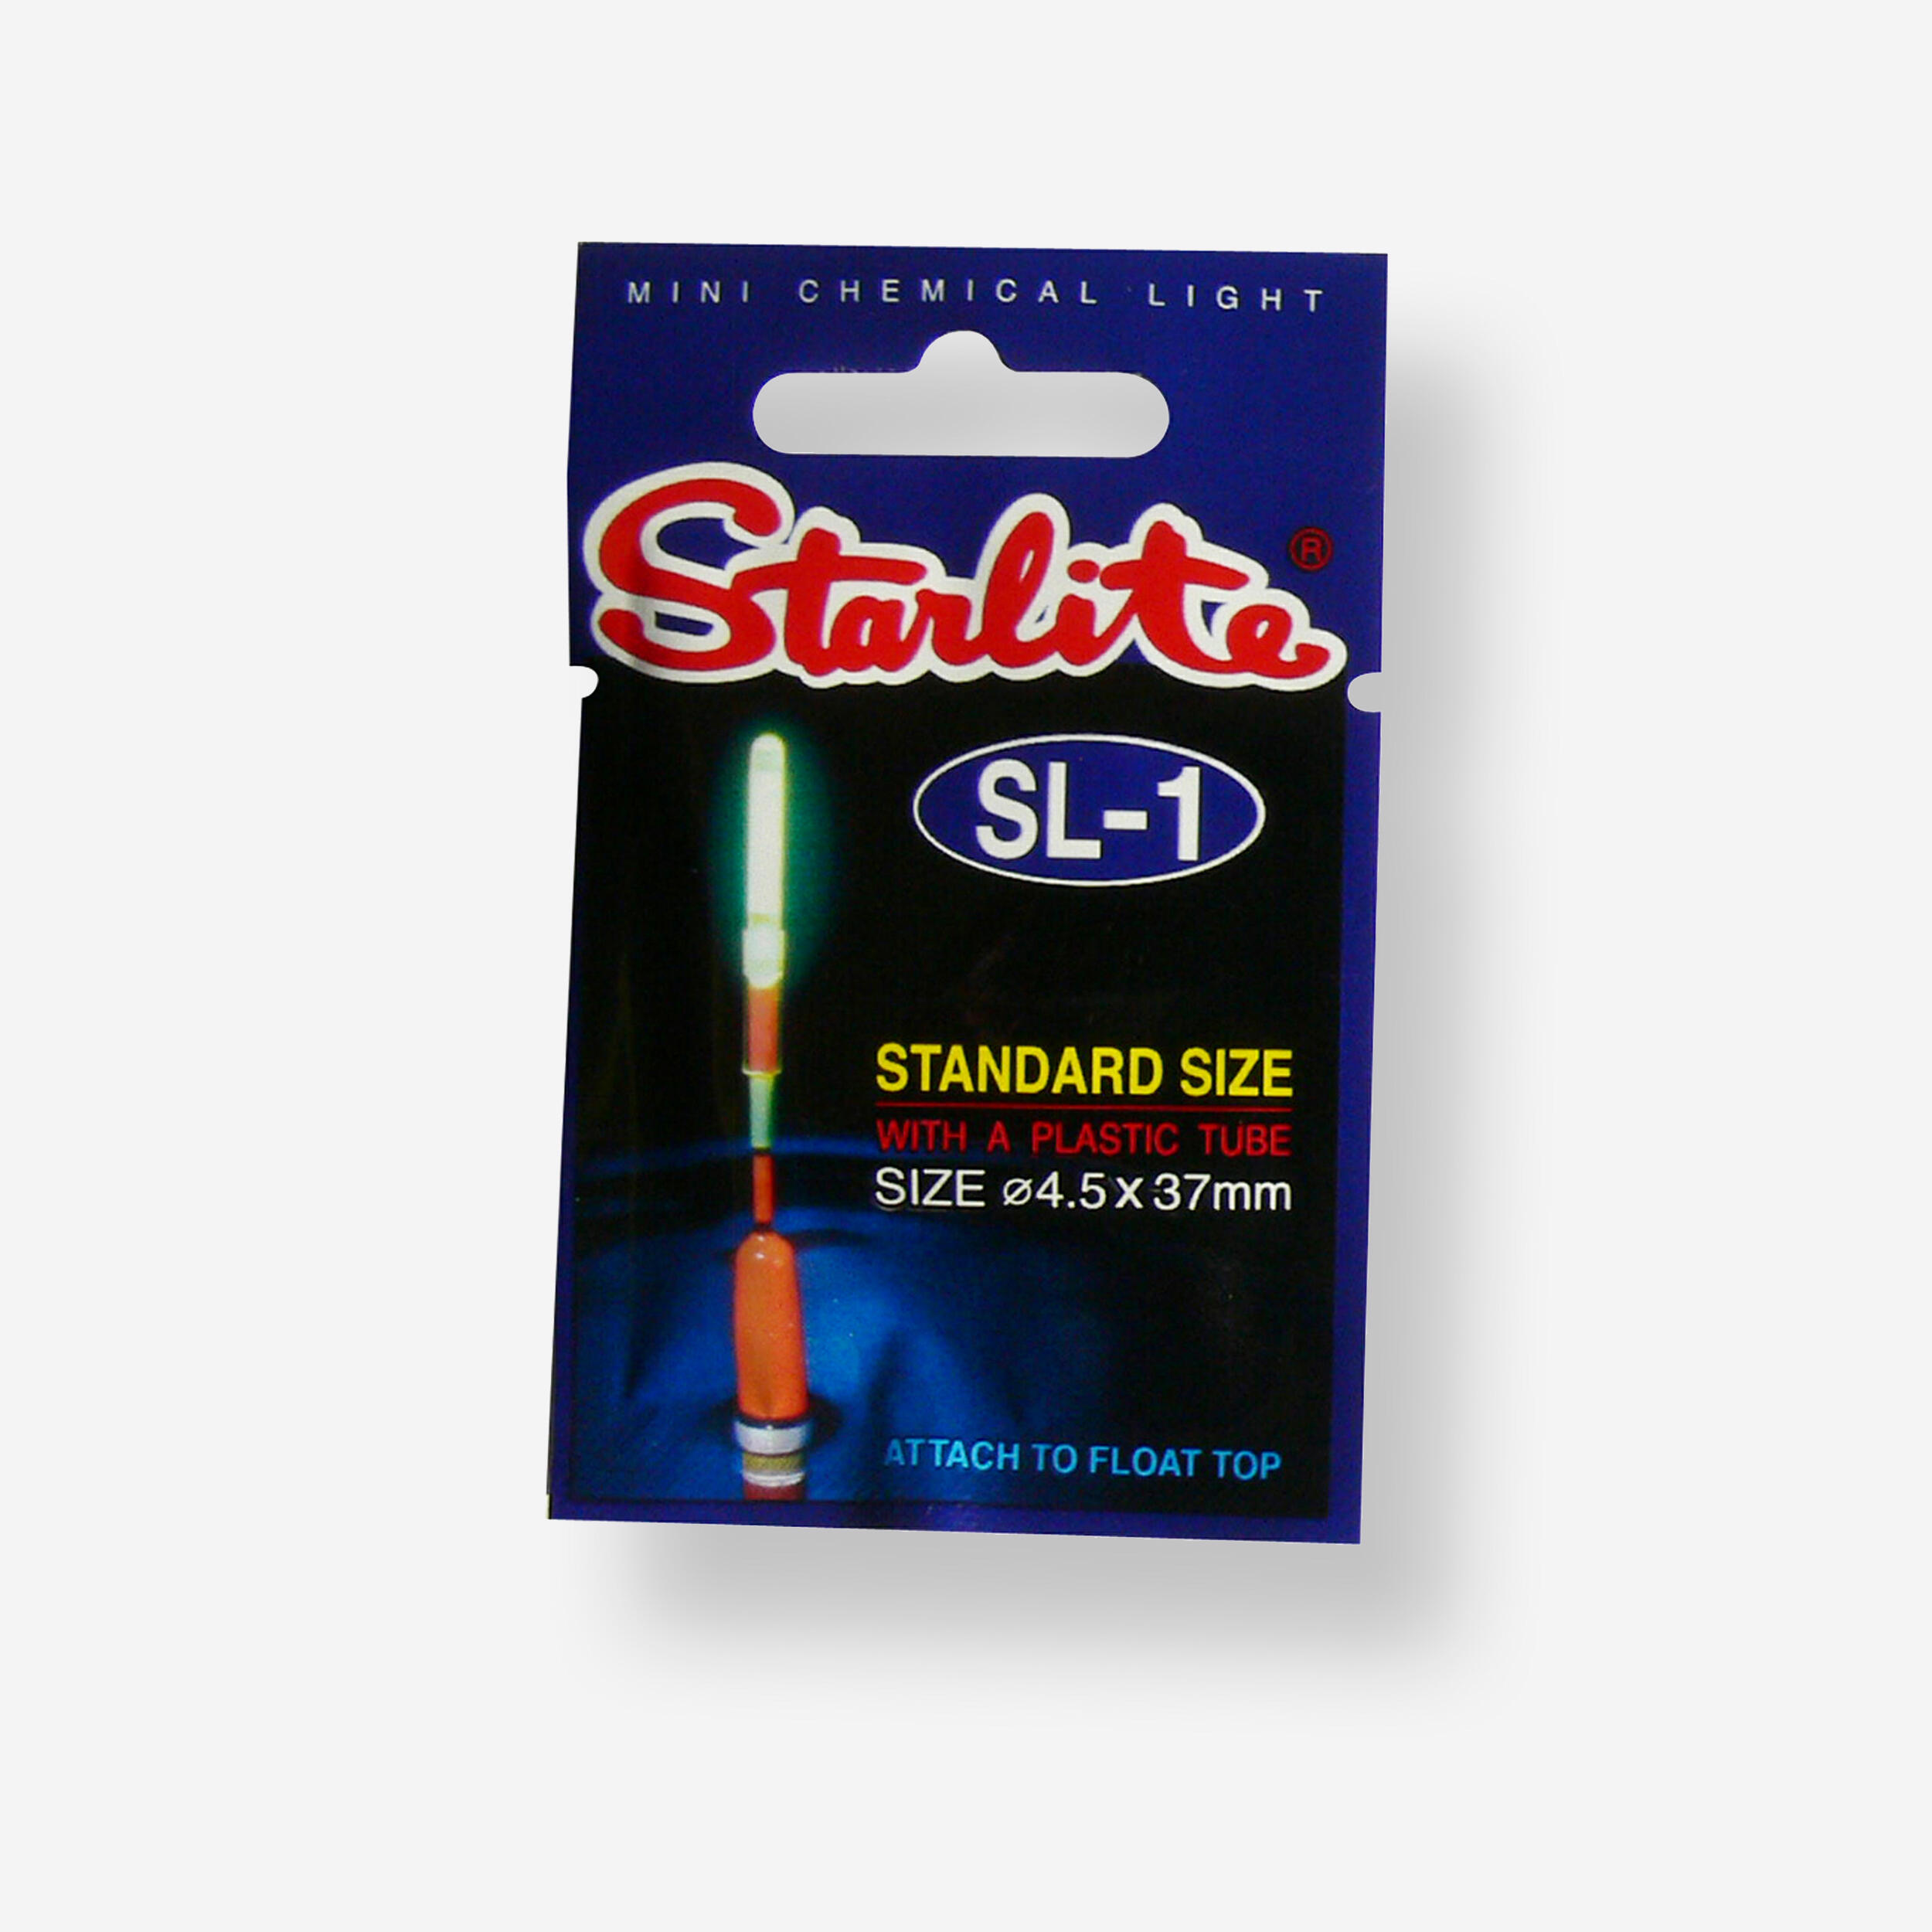 Starlite SL1 4.5x37mm pescuit marin 4.5x37mm